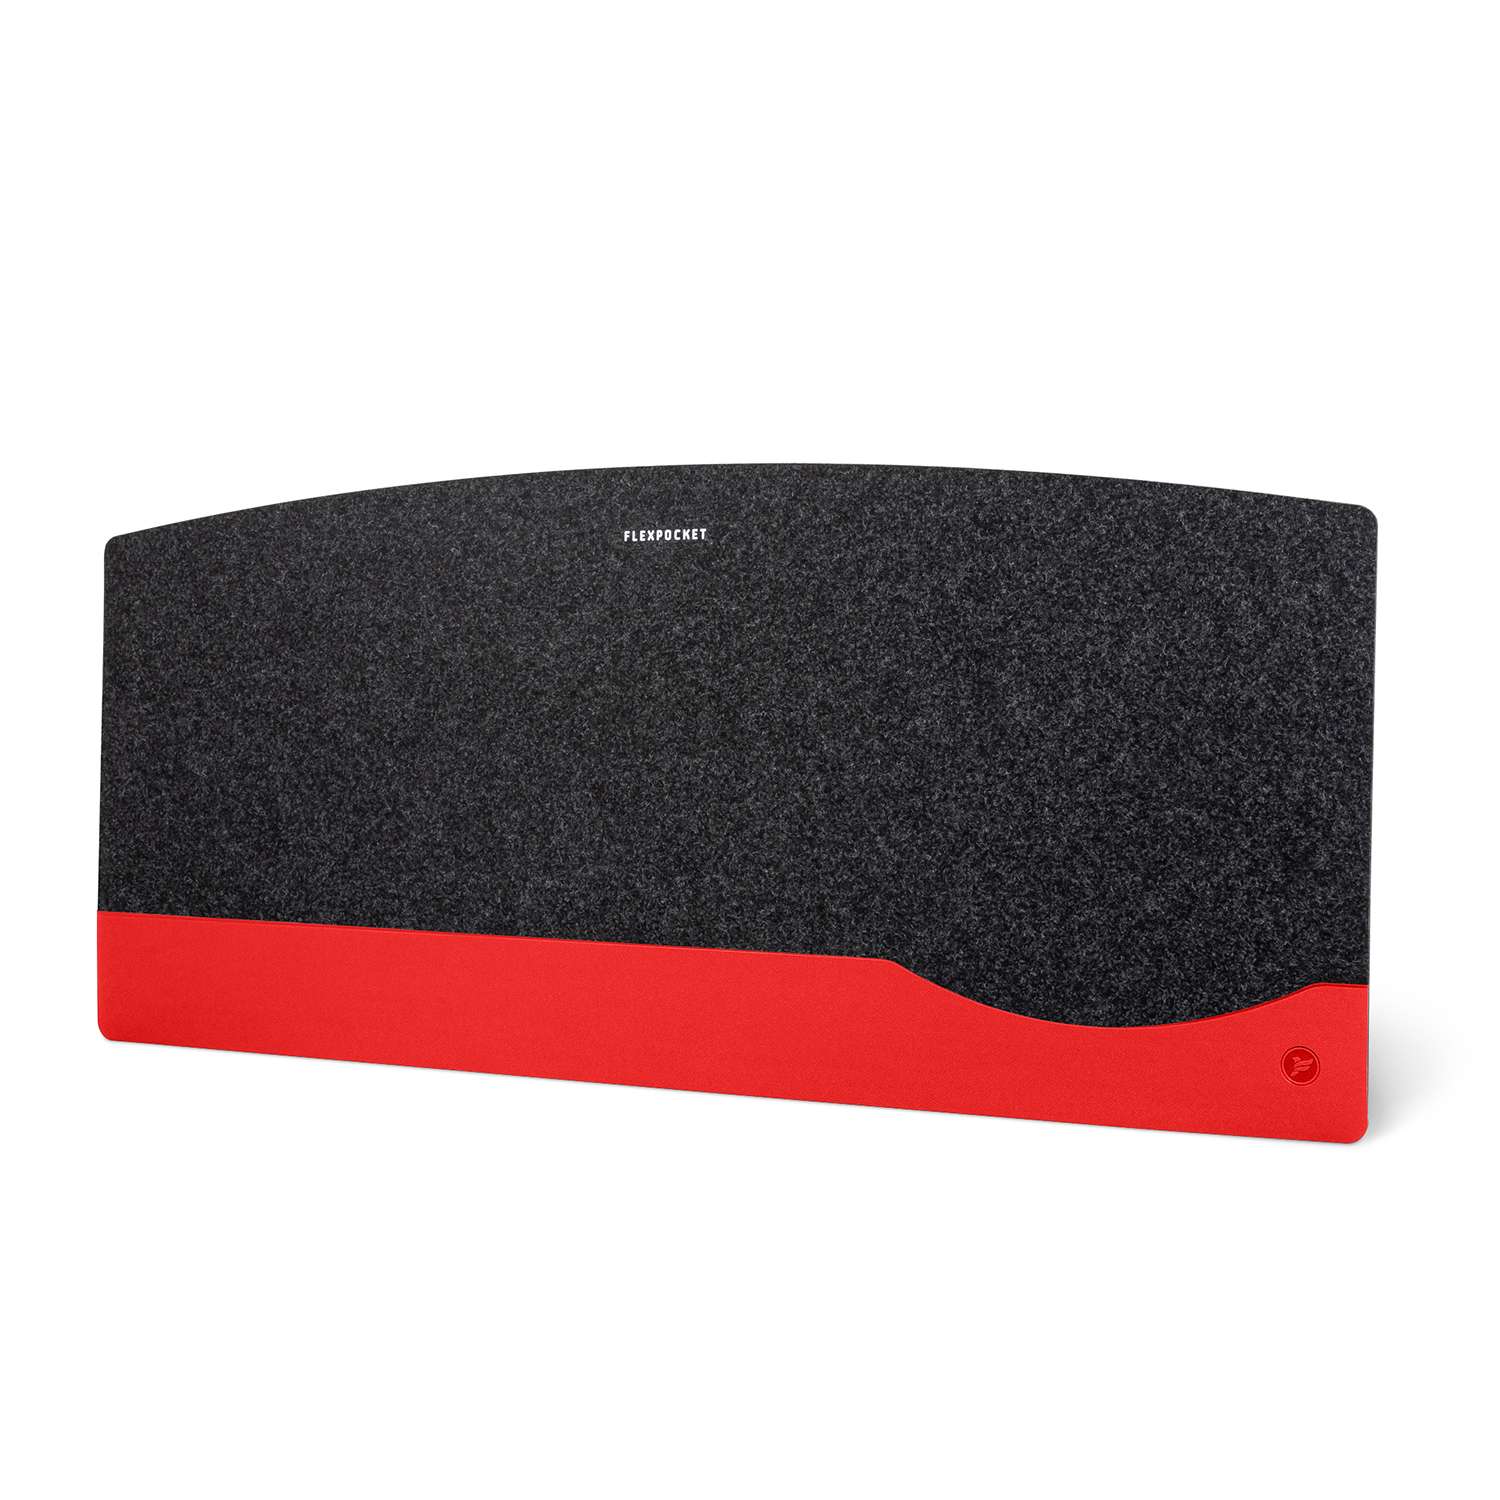 Настольный коврик Flexpocket для мыши 700х310мм красный - фото 2